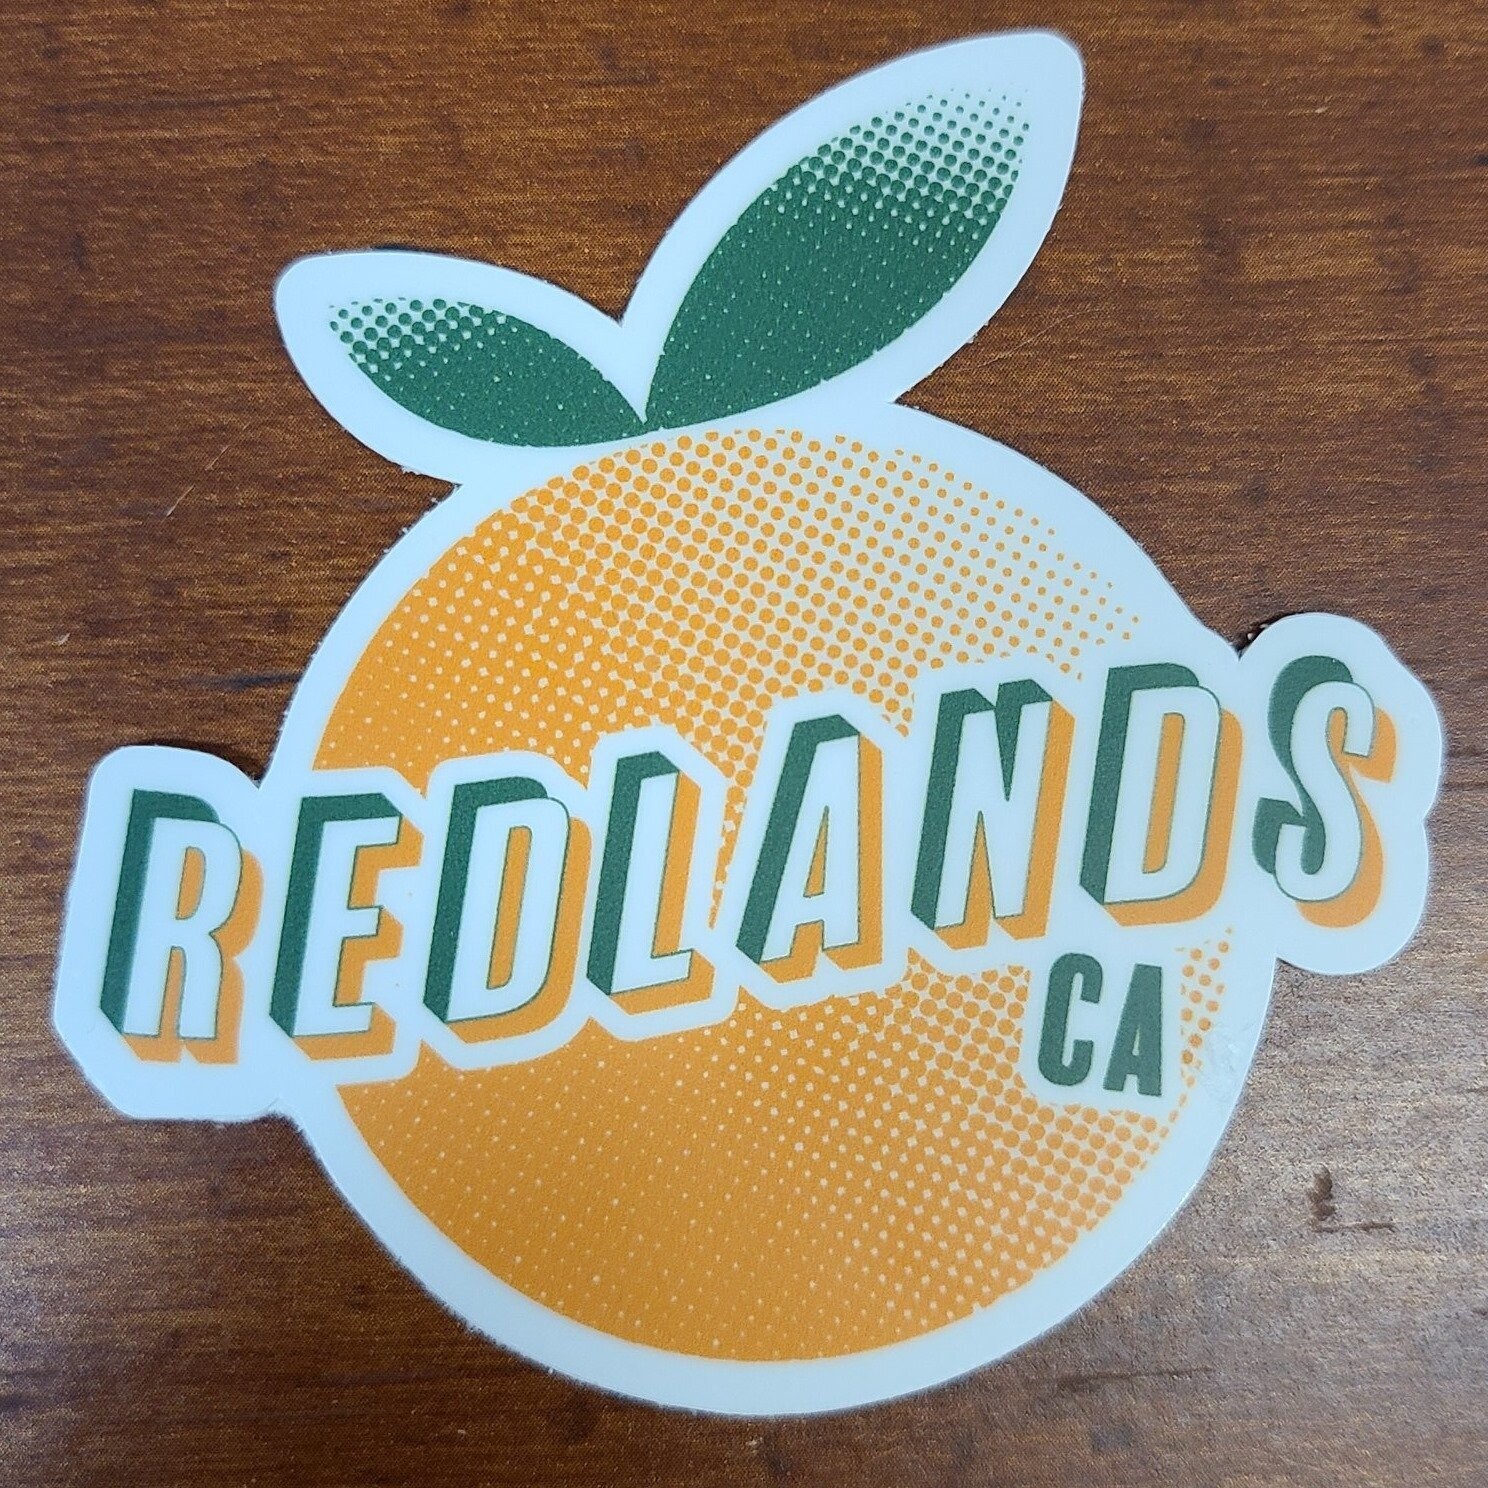 Redlands Orange Vinyl Sticker